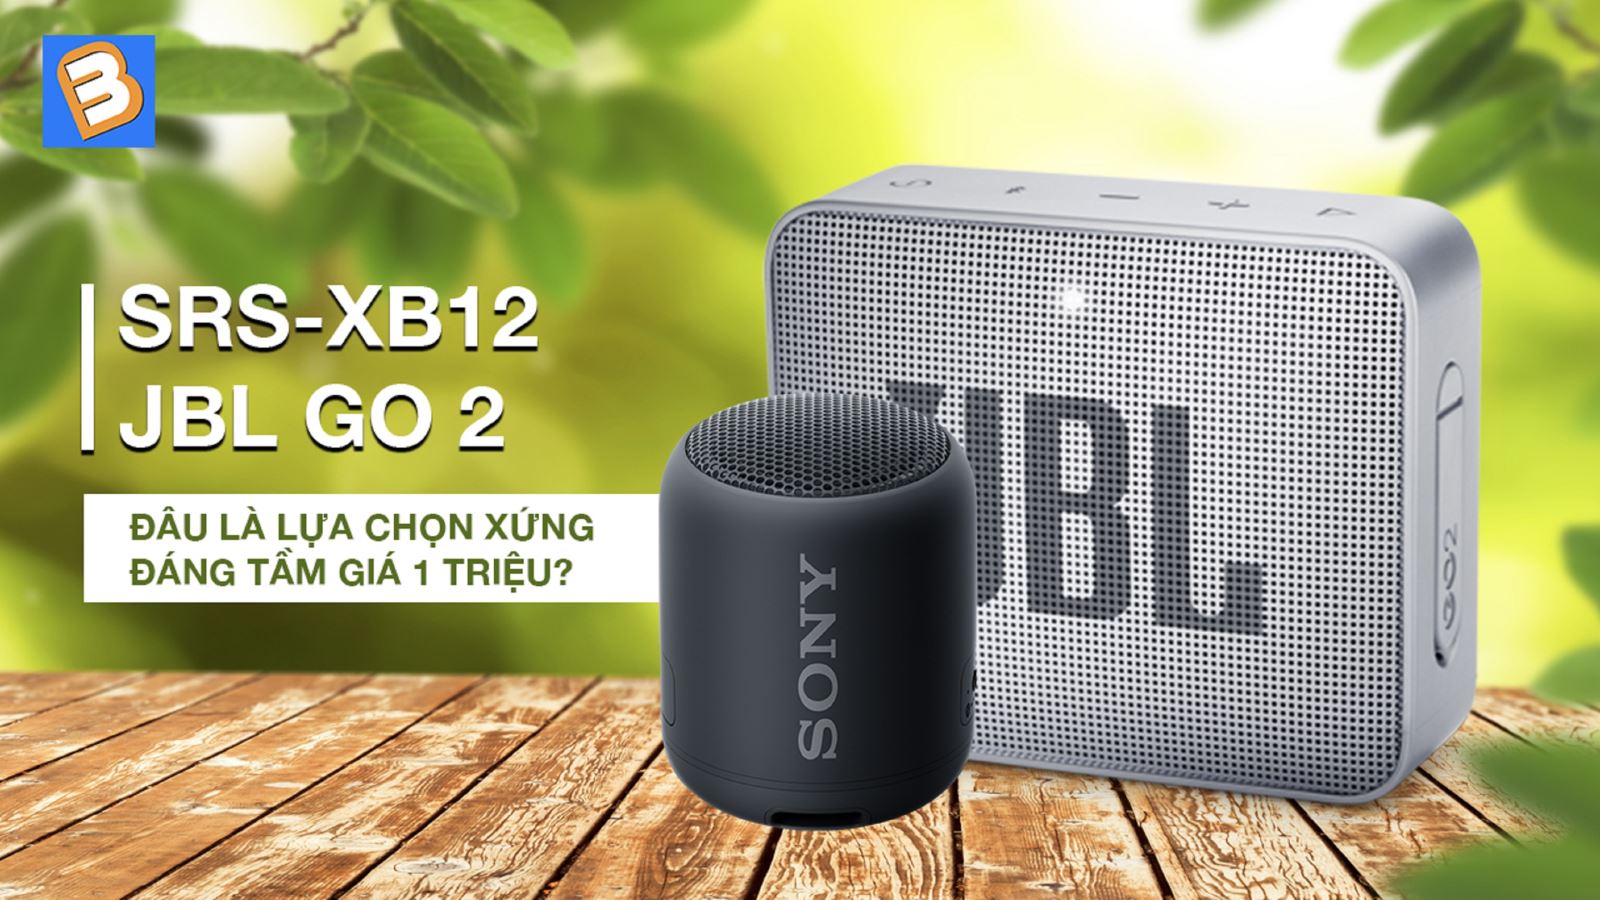 Sony SRS XB12 với JBL Go 2: Đâu là lựa chọn xứng đáng tầm giá 1 triệu?